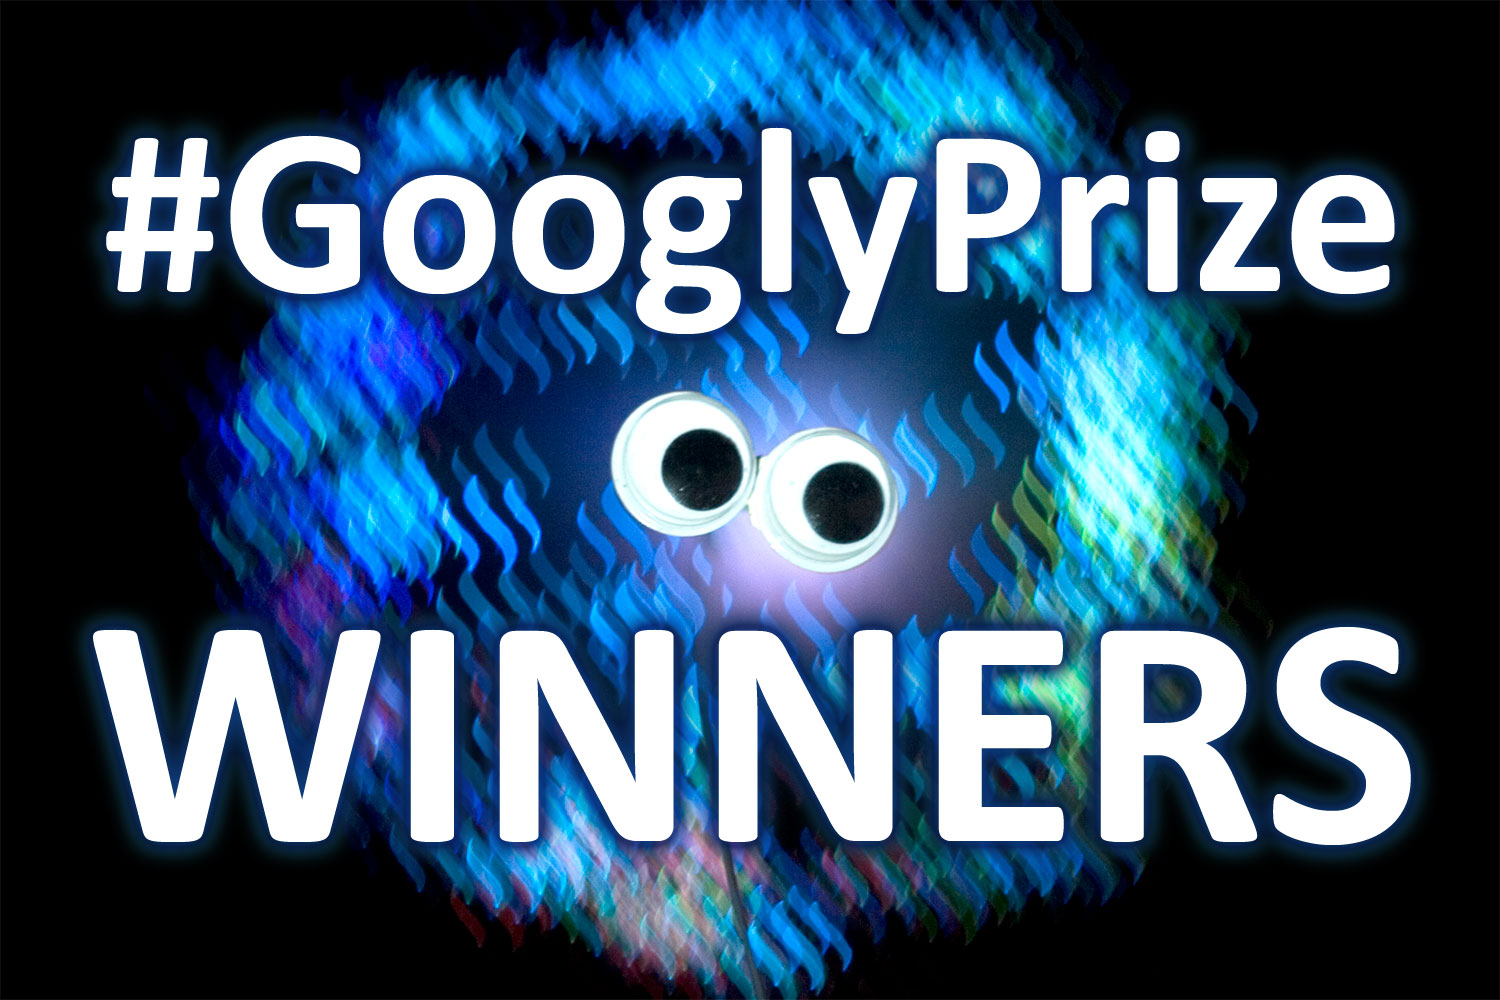 geyes__gprize_02_winners.jpg